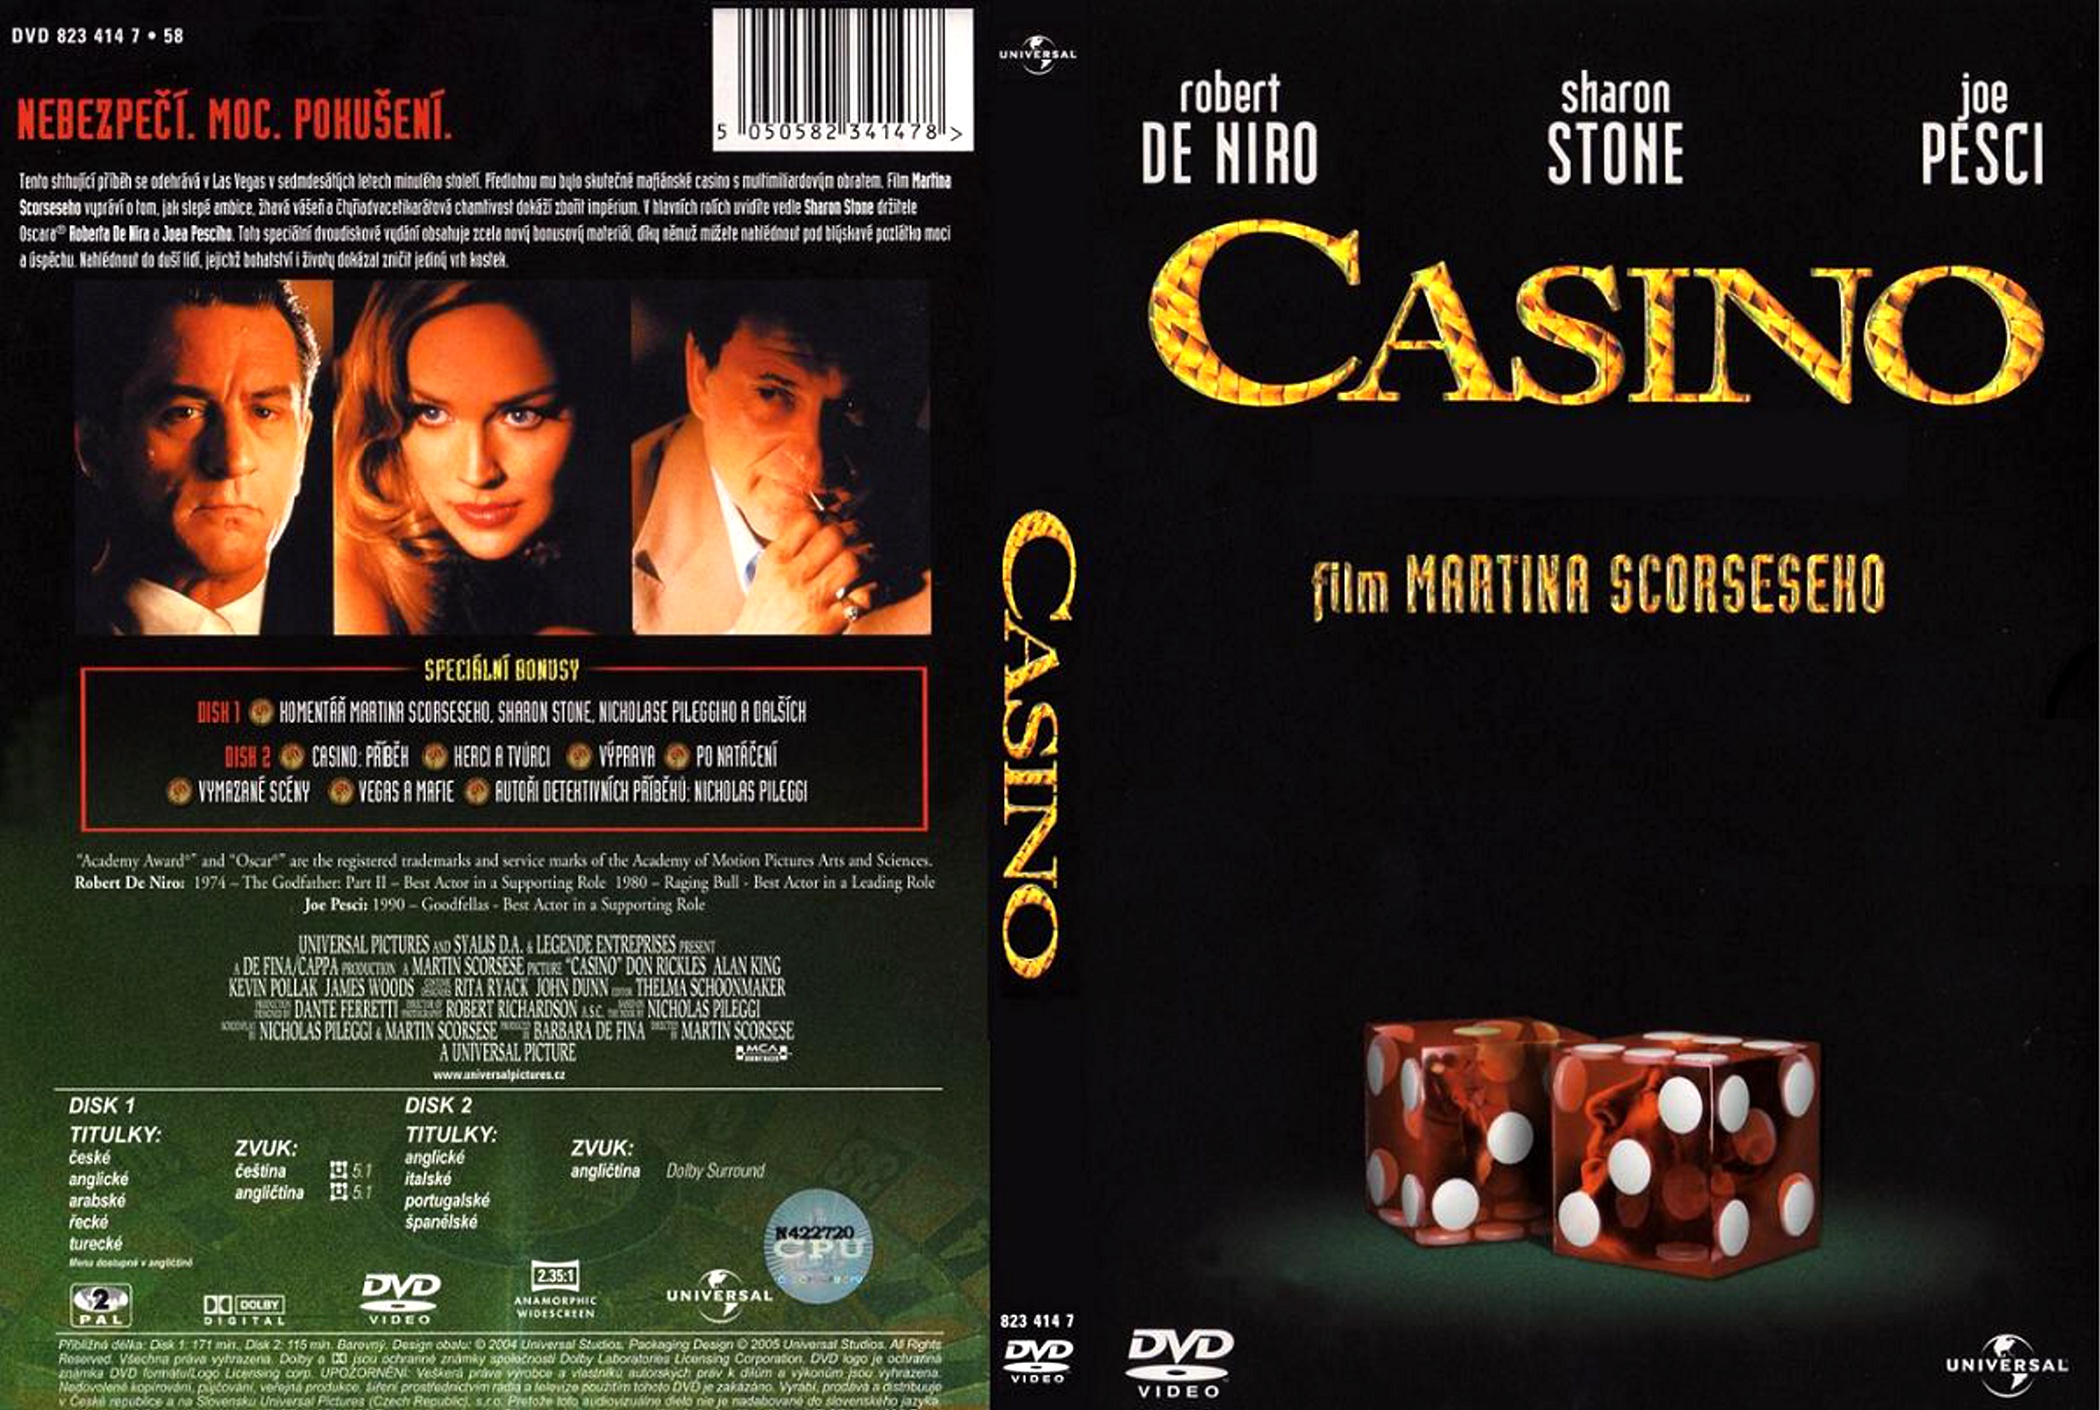 gino casino game over dvd torrent